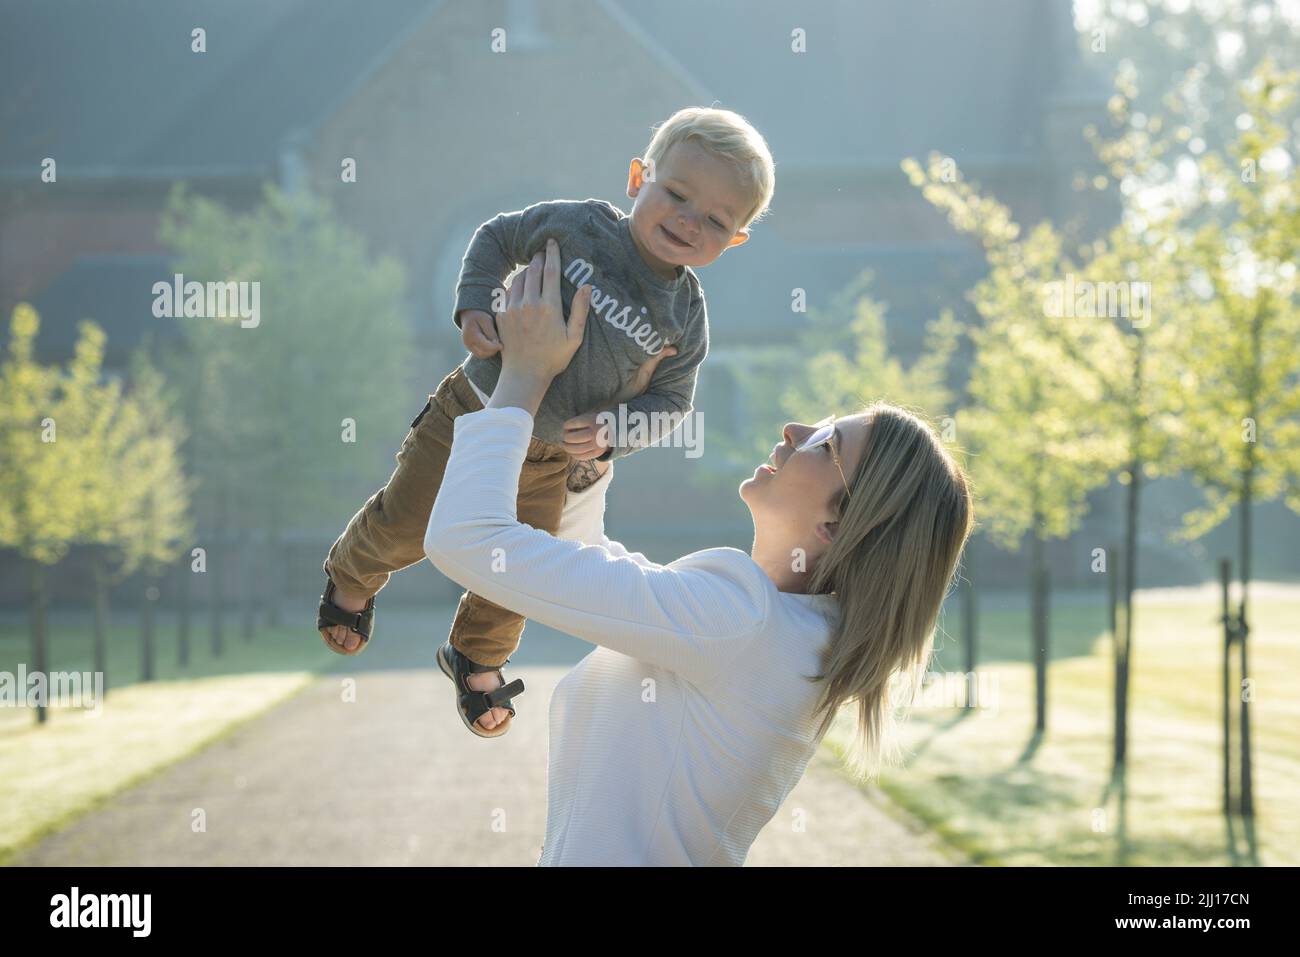 Eine junge und glückliche Mutter und ein Kind, spielend, stehen inmitten eines Parks in den Strahlen der aufgehenden Morgensonne. Hochwertige Fotos Stockfoto